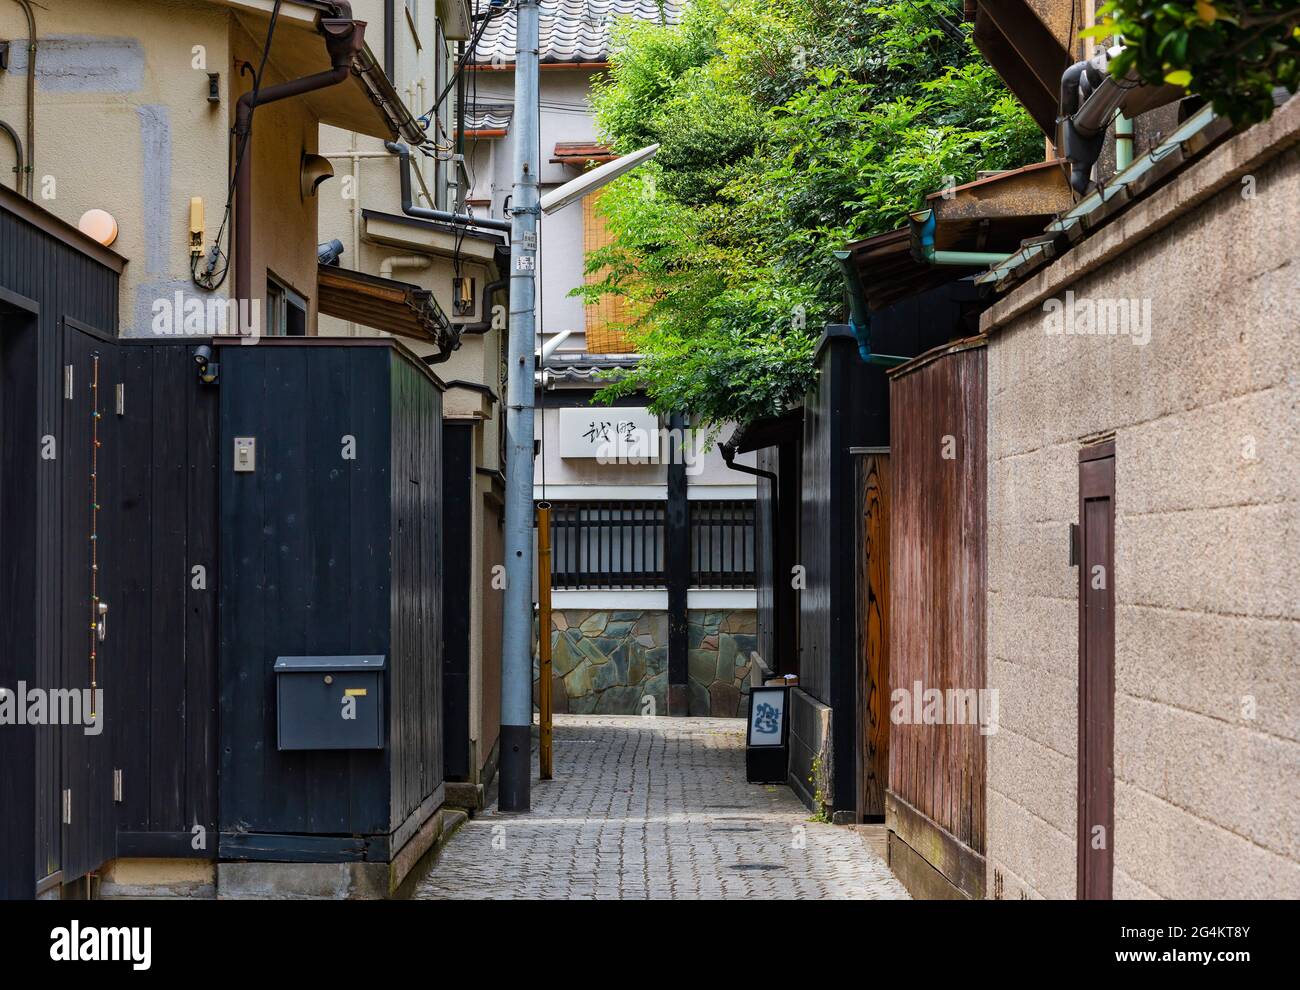 tokyo, japon - juin 08 2021 : chemin pavé étroit de Kakurenbo yokocho ou de cacher et de chercher ruelle dans l'ancien quartier rouge-lumière d'Ushigome Hanamachi avec TH Banque D'Images